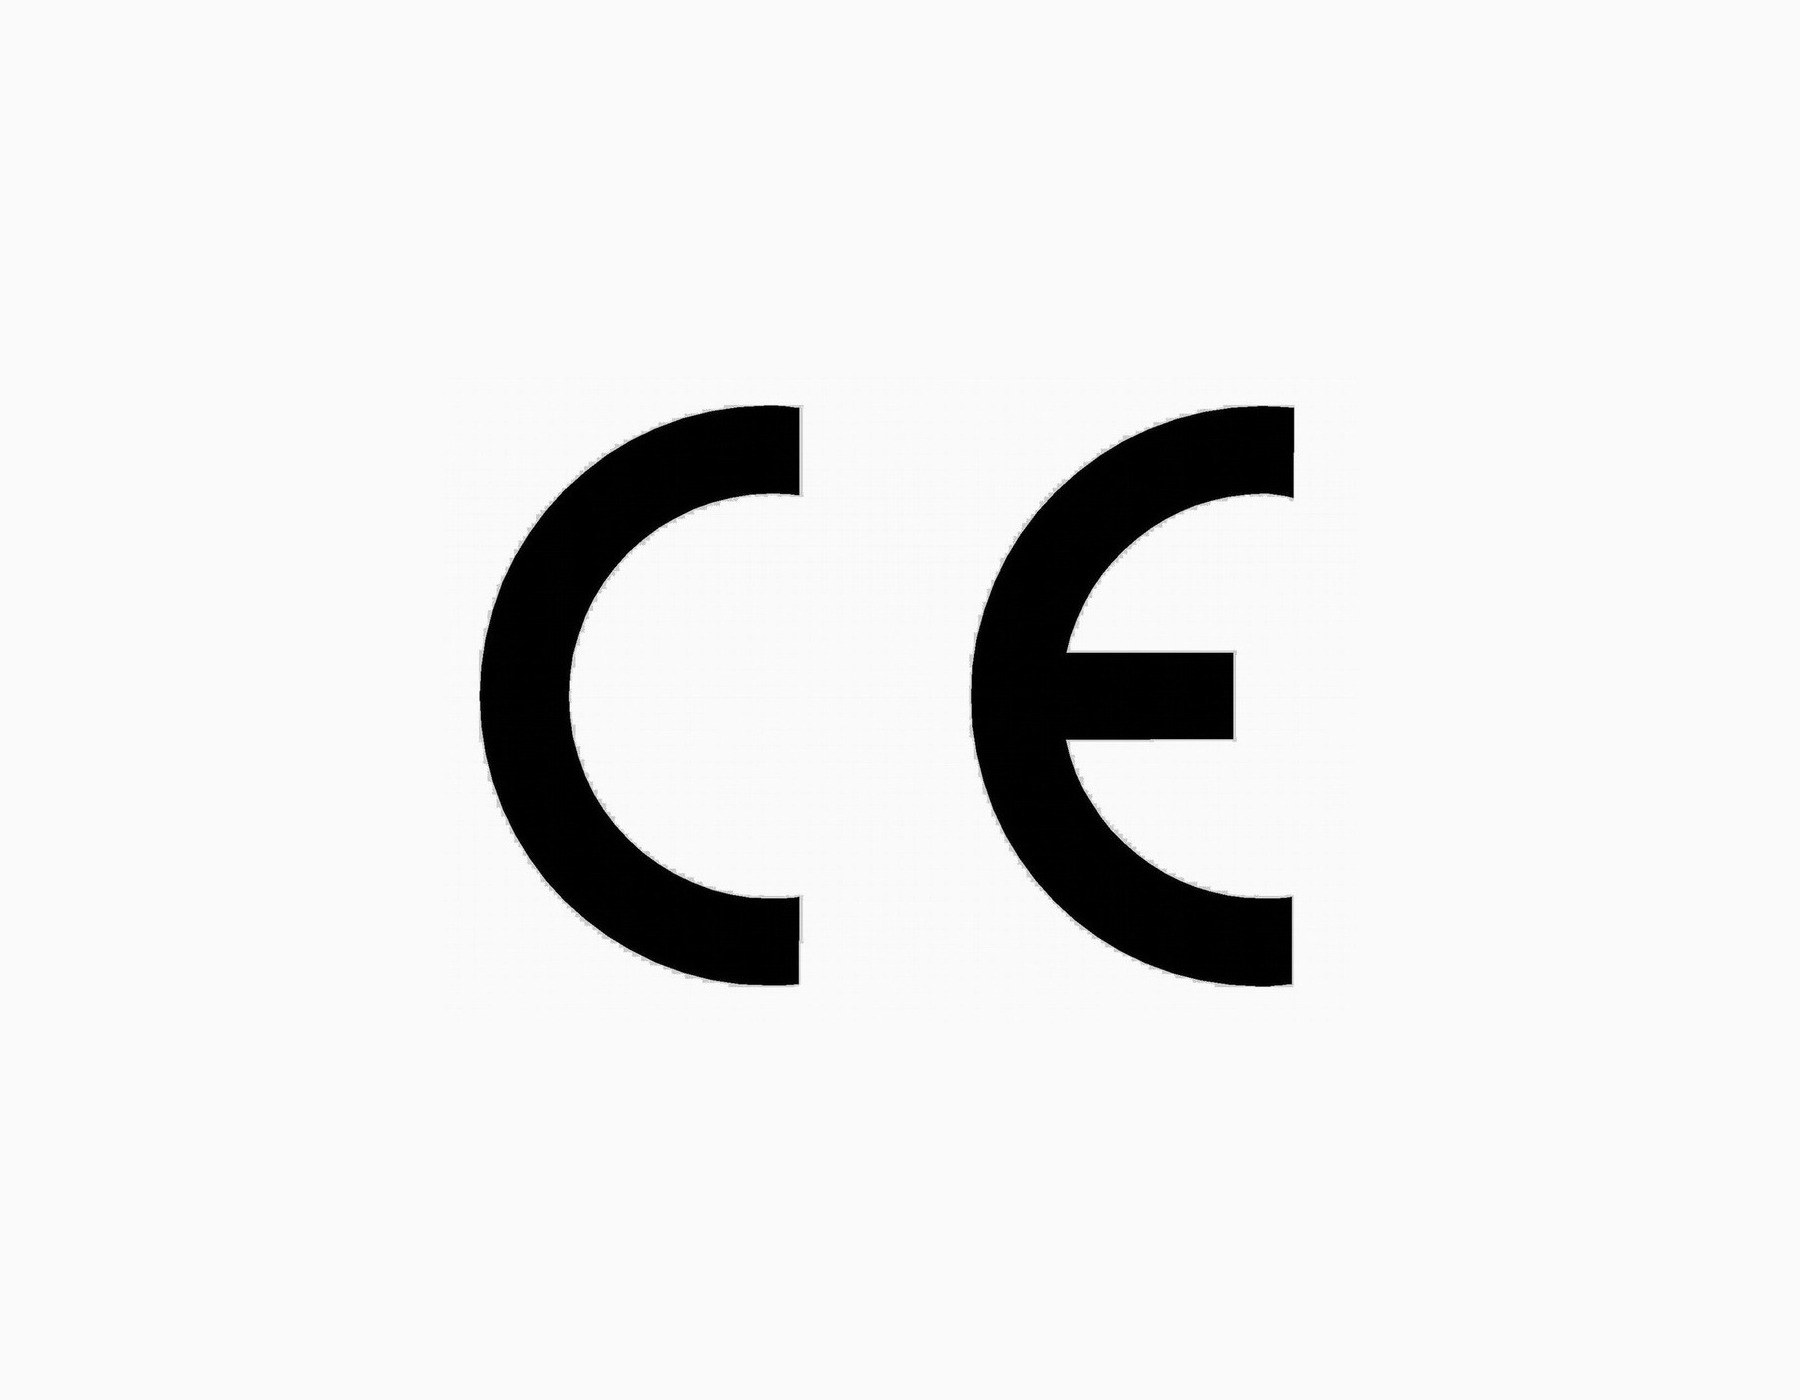 The Ce Mark